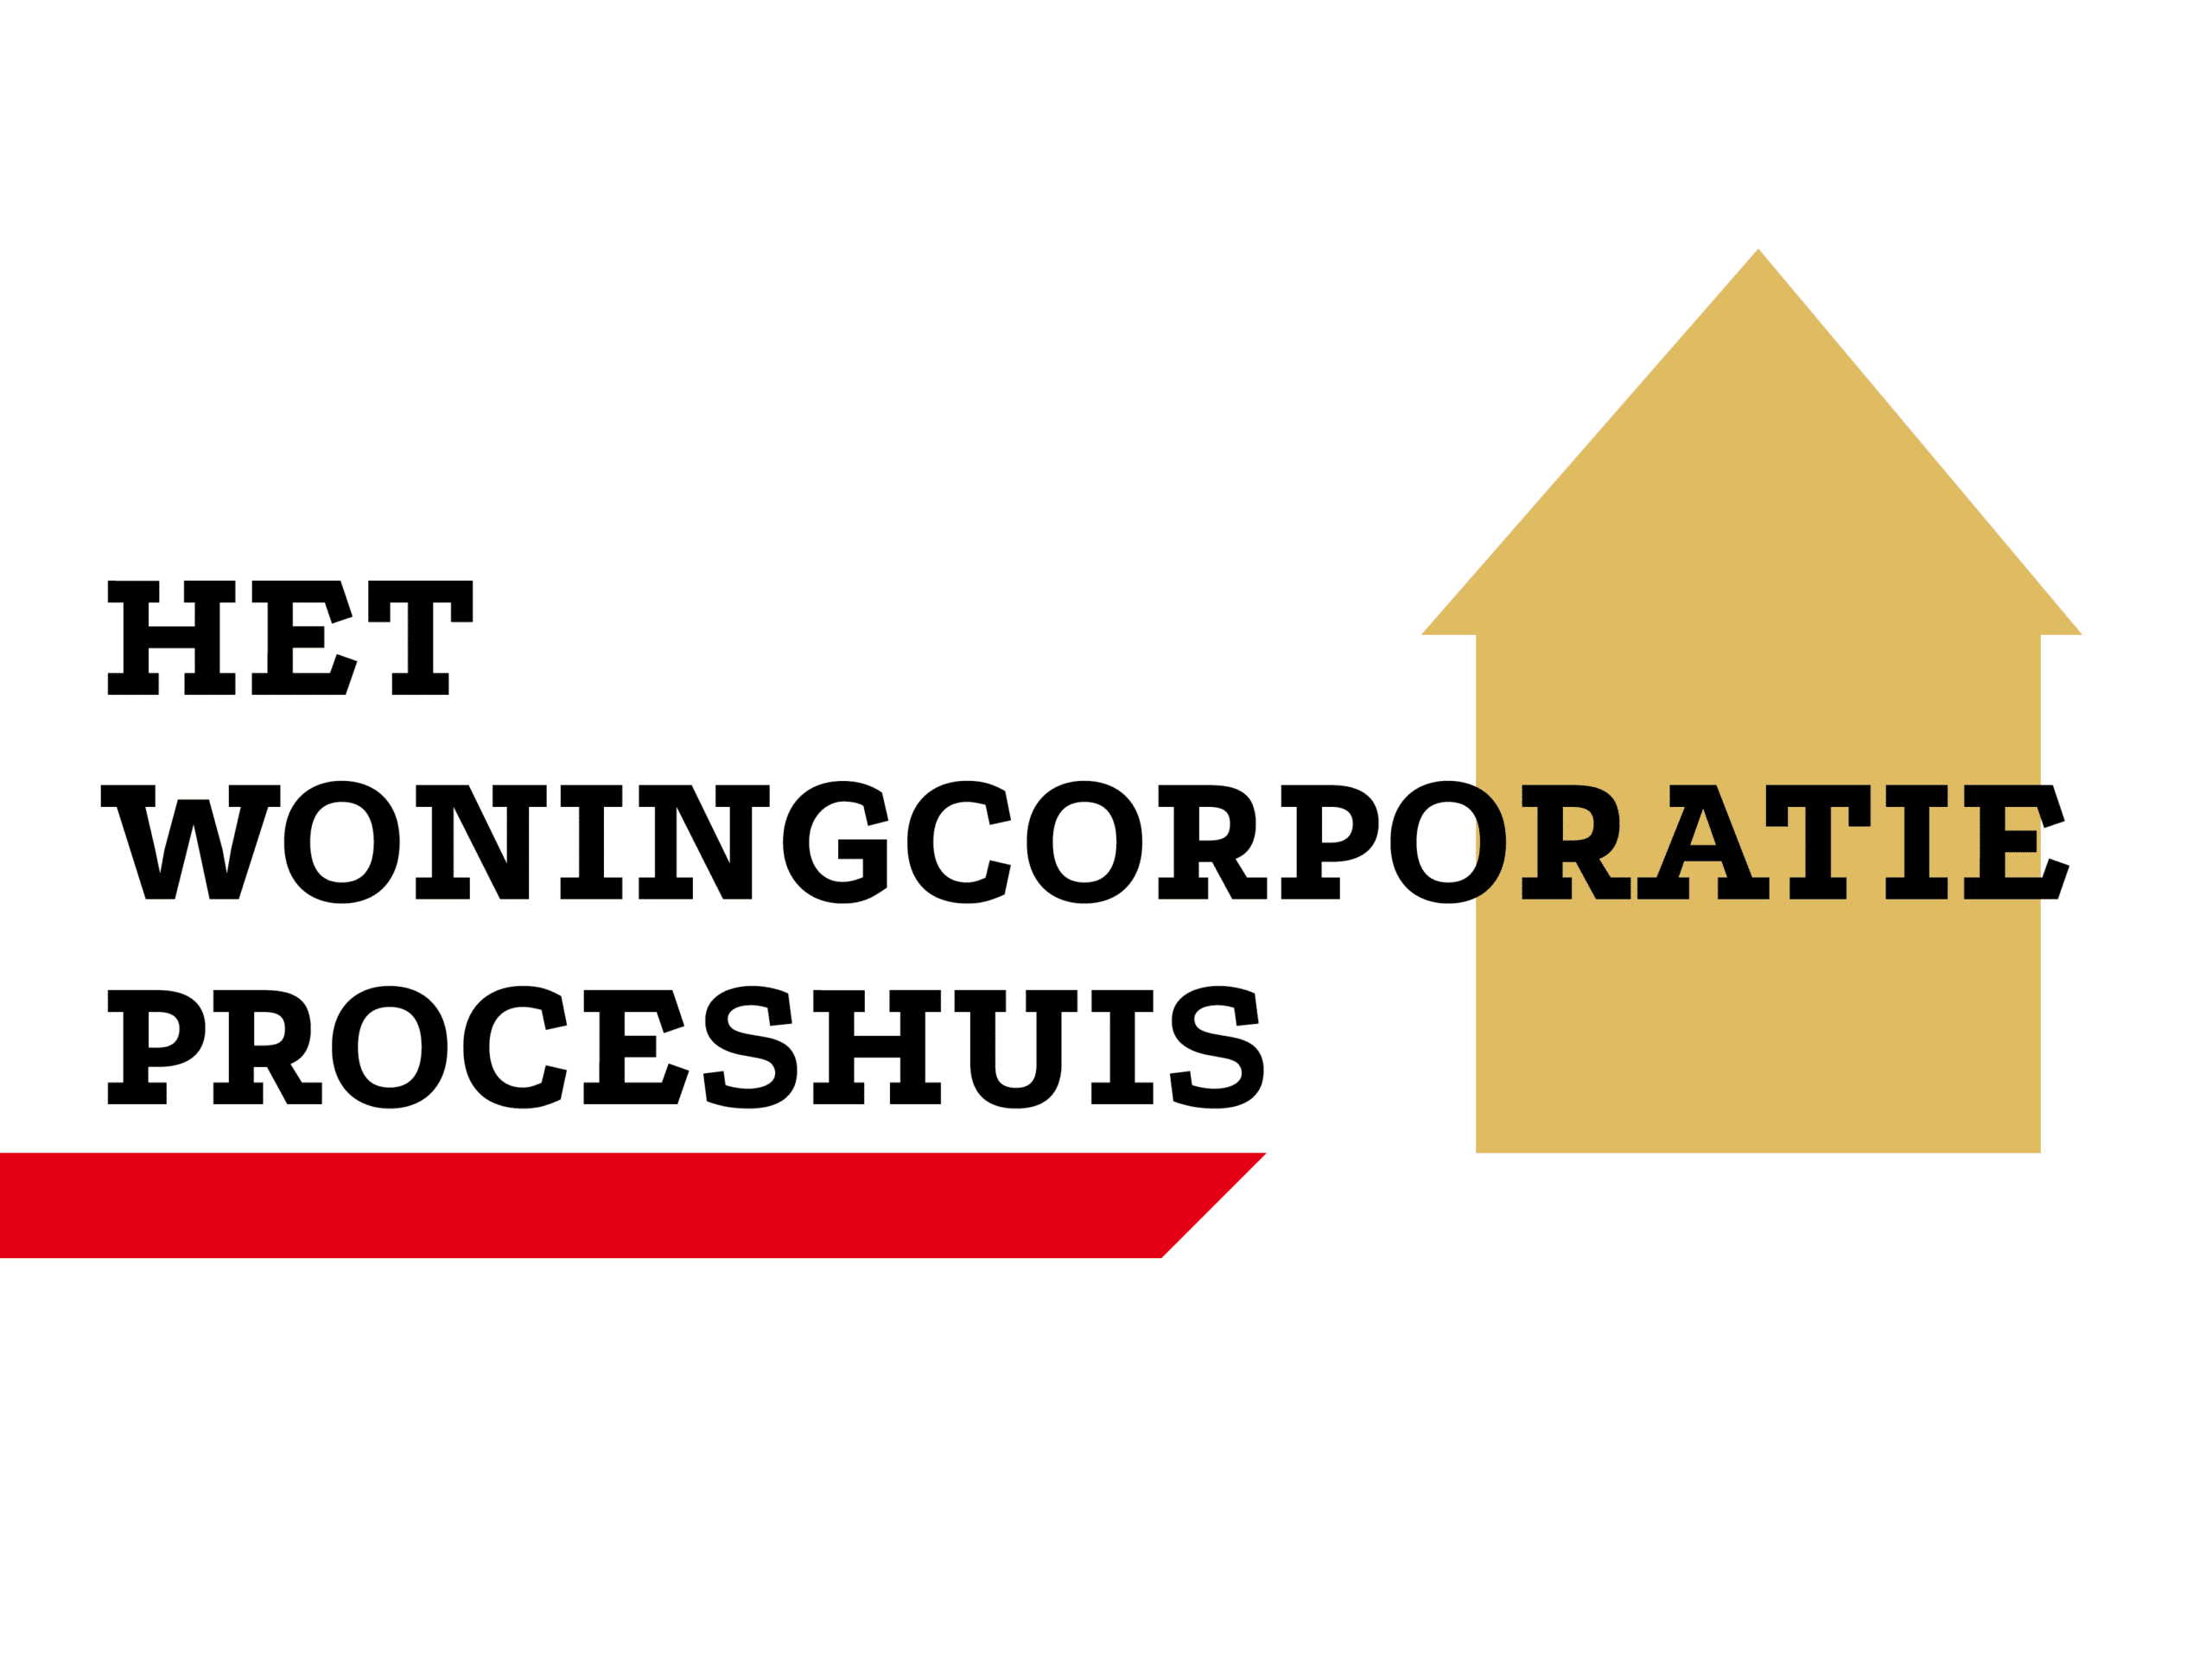 “Woningcorporatie Proceshuis biedt rust, duidelijkheid en transparantie” – Branchebrede samenwerking leidt tot uniek framework